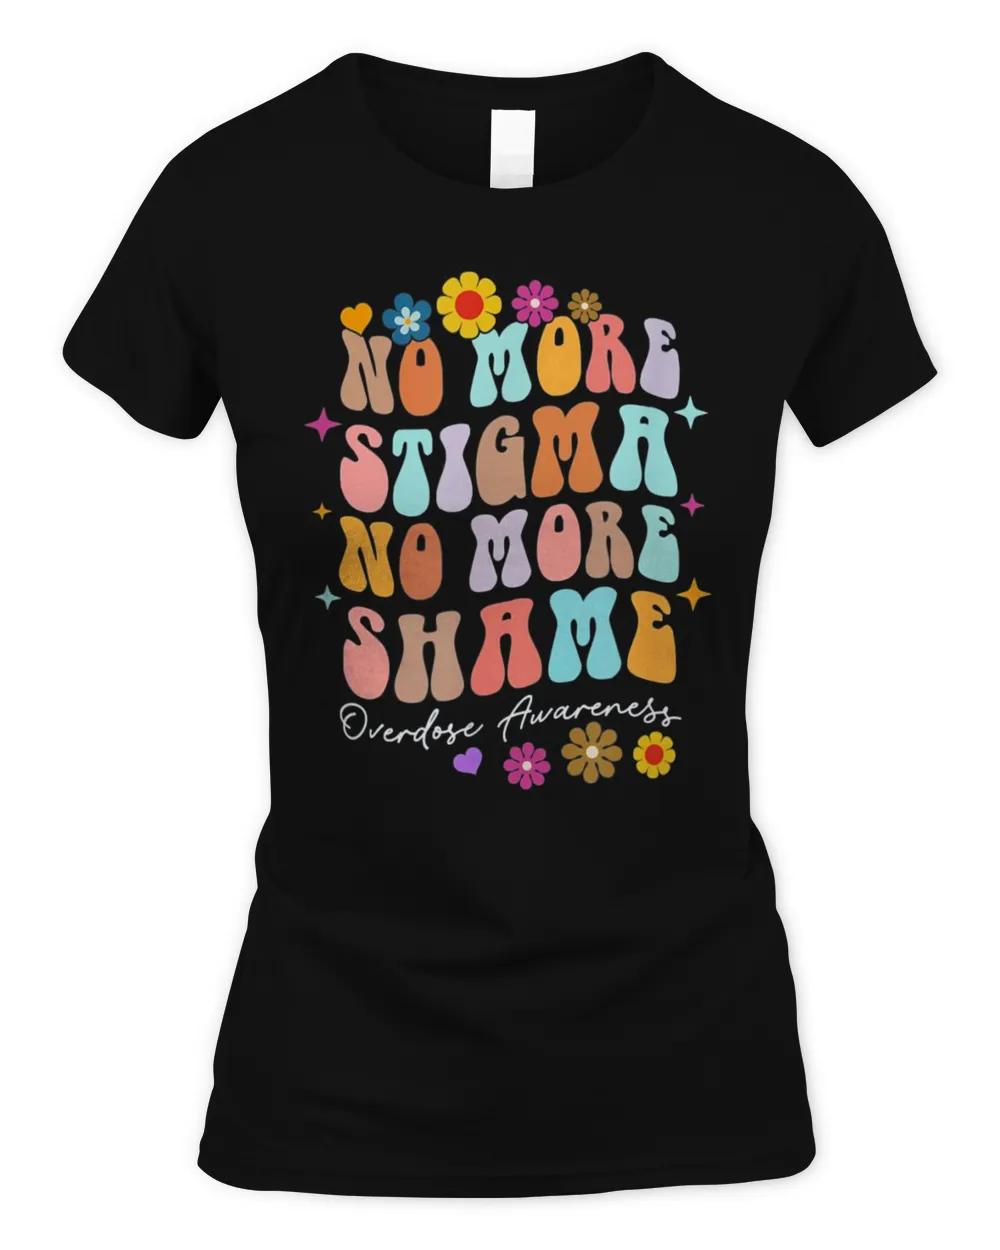 No More Stigma & Shame Overdose Awareness Recovery Inspired T-Shirt